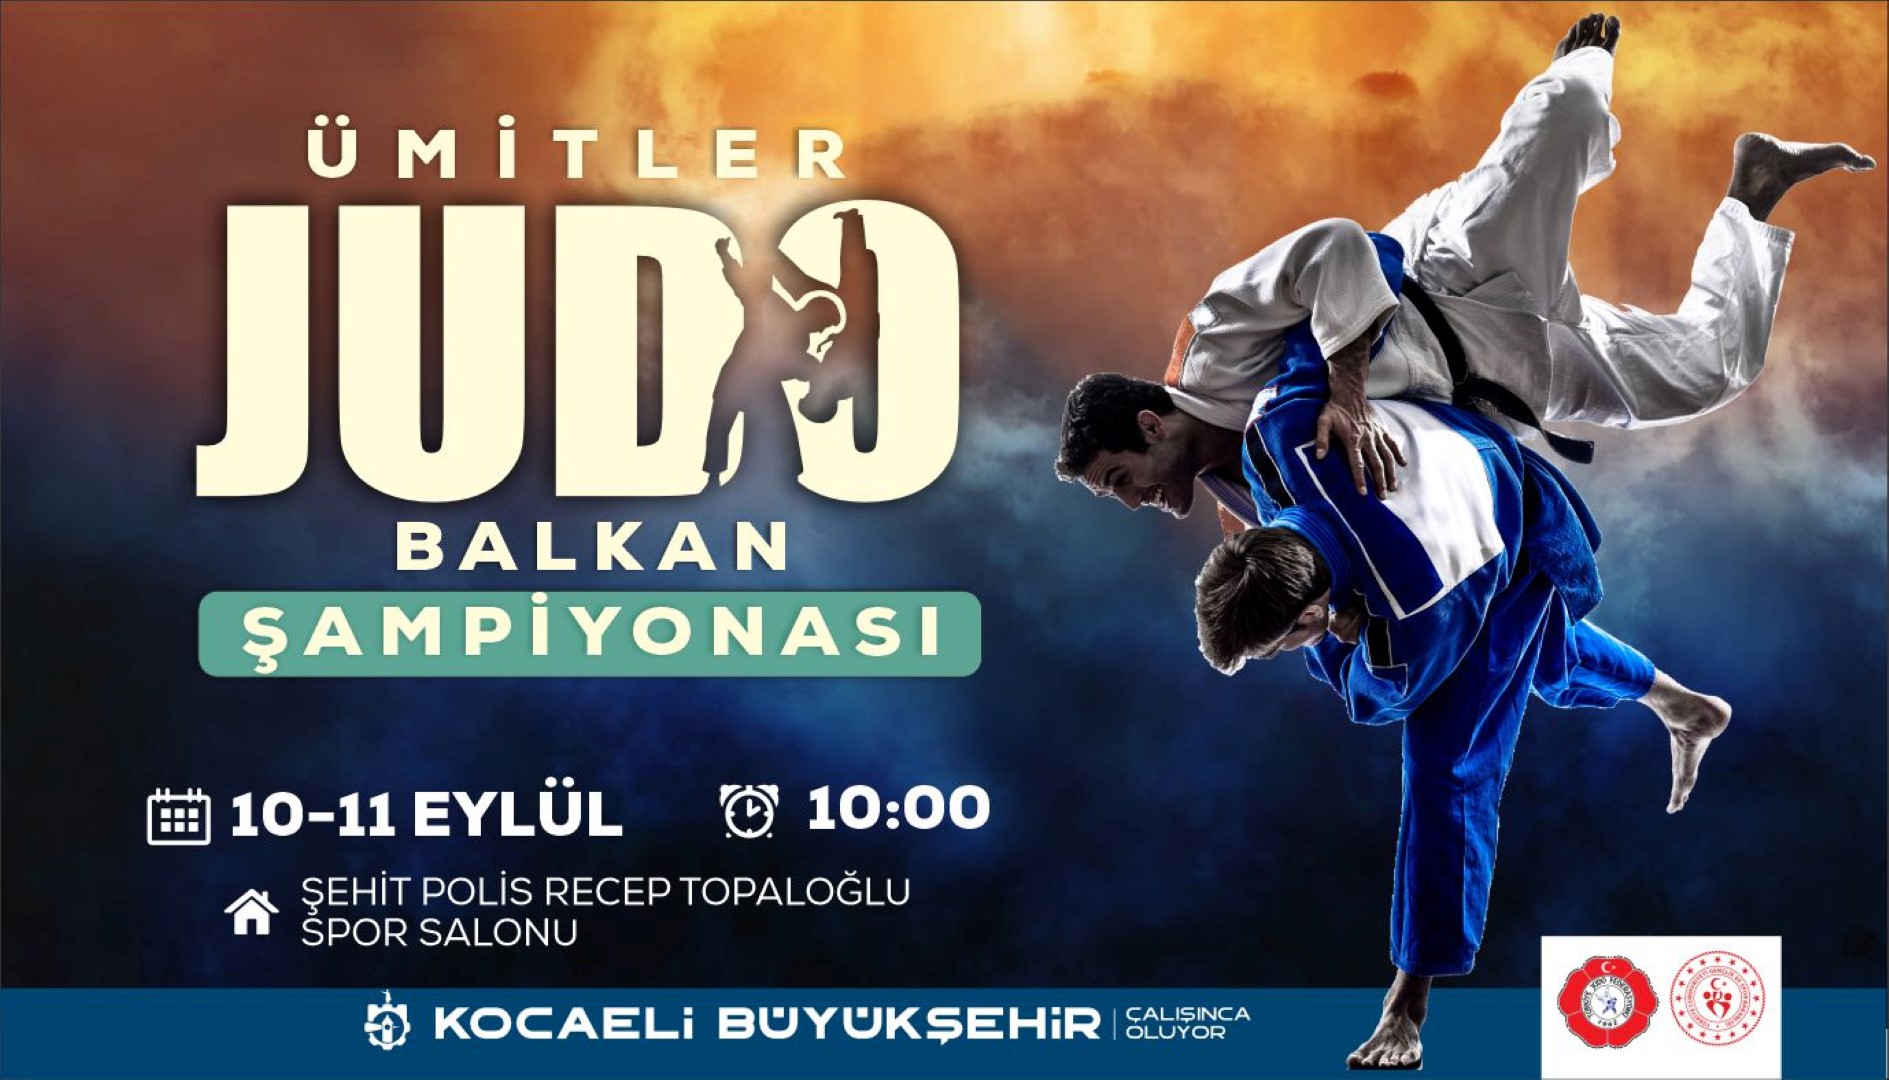 Balkan Judo Şampiyonası başlıyor